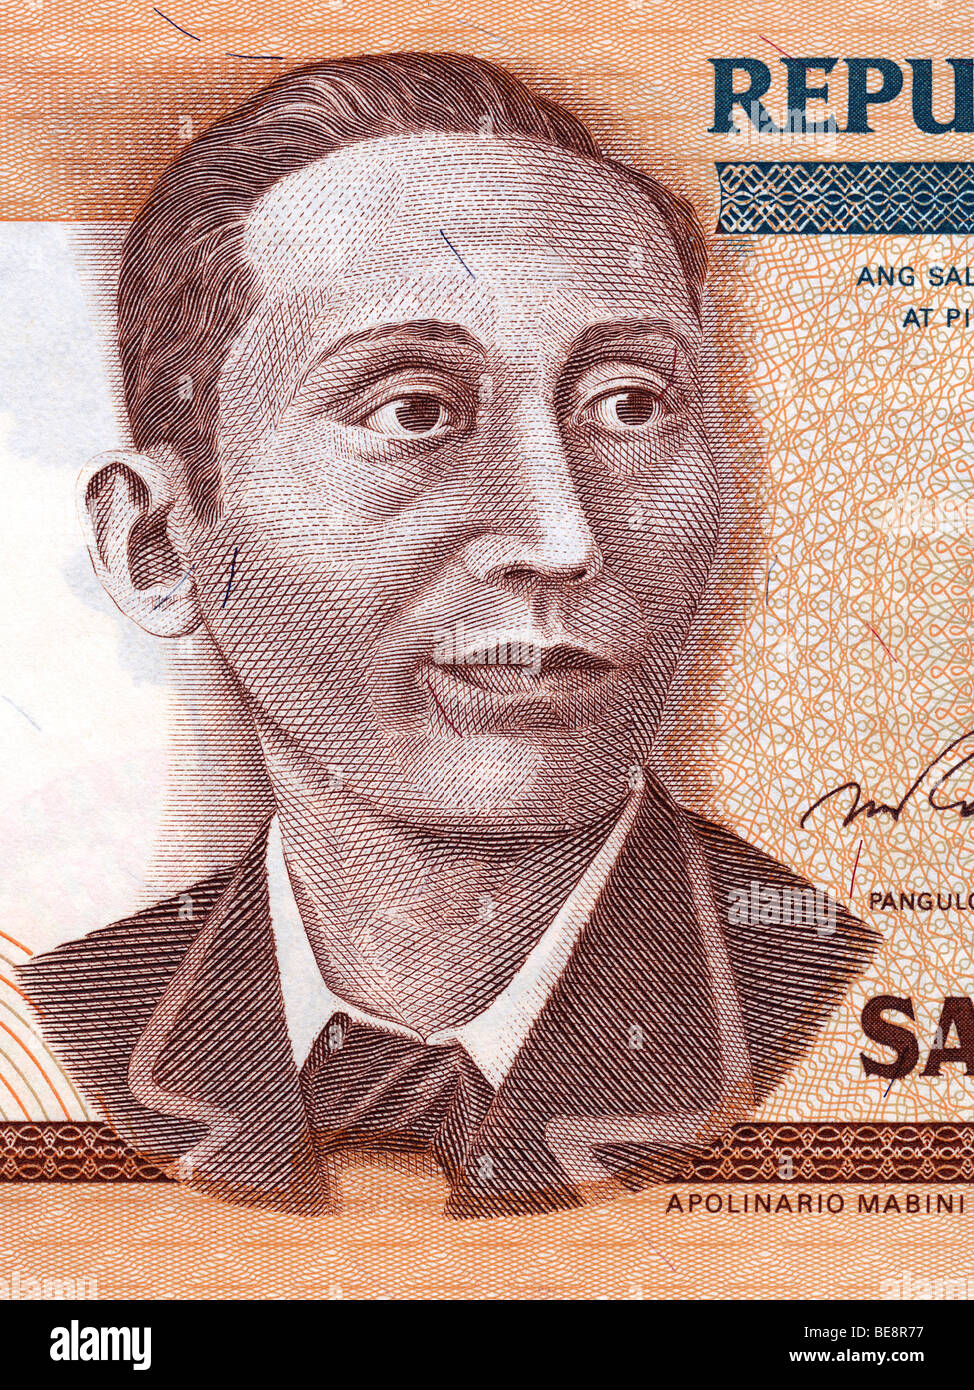 Philippine 10 Peso Banknote, Apolinario Mabini Portrait. Stock Photo